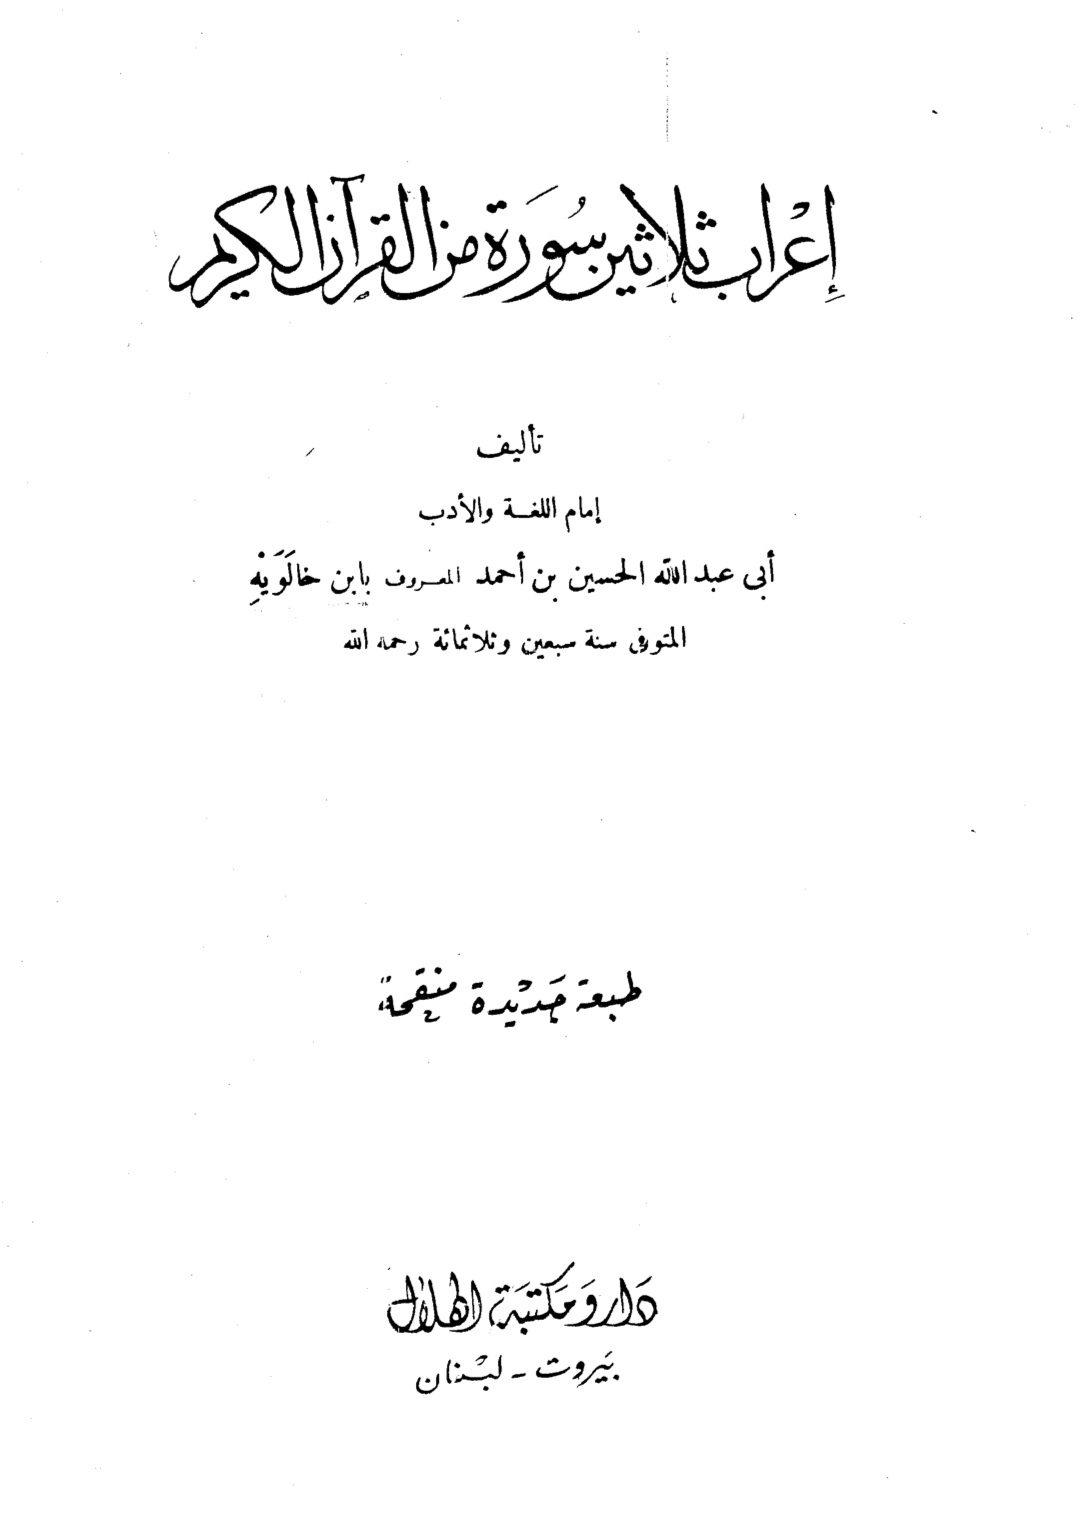 اعراب ثلاثين سورة من القرآن الكريم

ابي عبدالله الحسين بن احمد